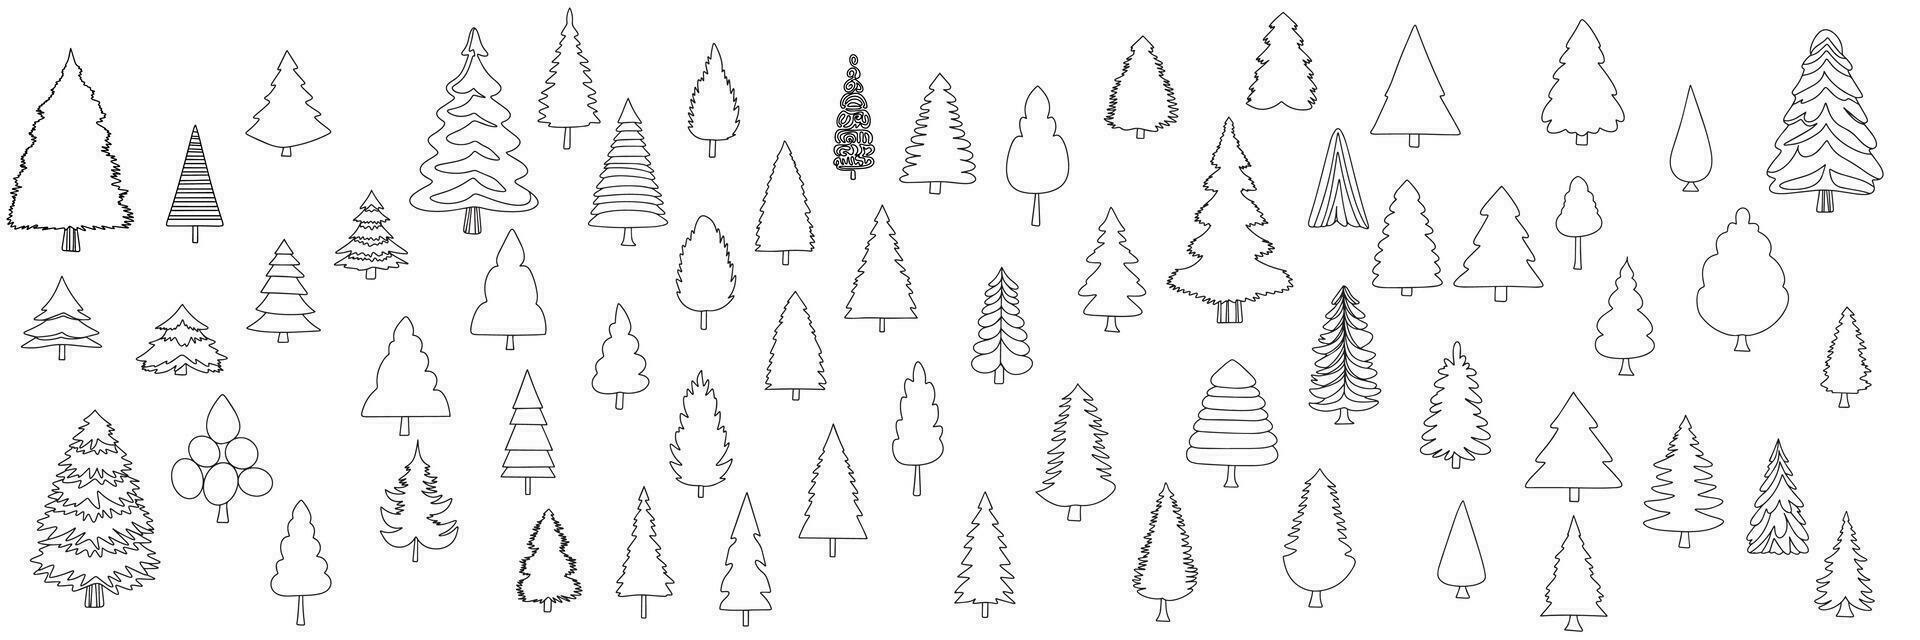 colección de pino árbol en garabatear estilo. mano dibujado abeto árbol aislado en blanco antecedentes. contorno pino arboles grande conjunto de piceas Navidad arboles en garabatear estilo. vector ilustración